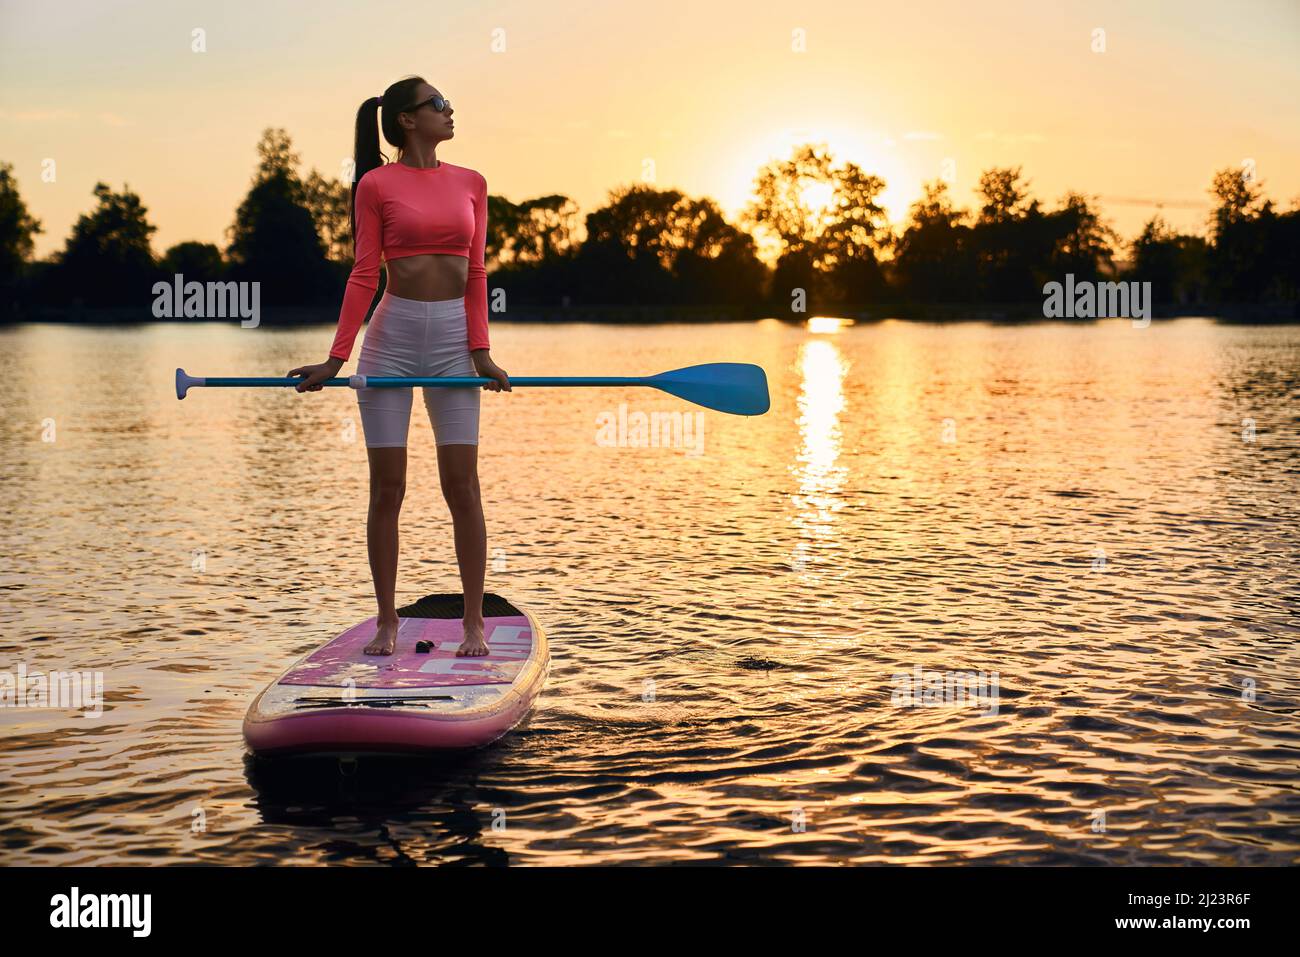 Attraktive Frau mit schlankem Körper schwimmt auf supboard während der Abendzeit. Kaukasische Brünette mit Paddel in den Händen Training an der frischen Luft mit erstaunlichen Sonnenuntergang auf dem Hintergrund. Stockfoto